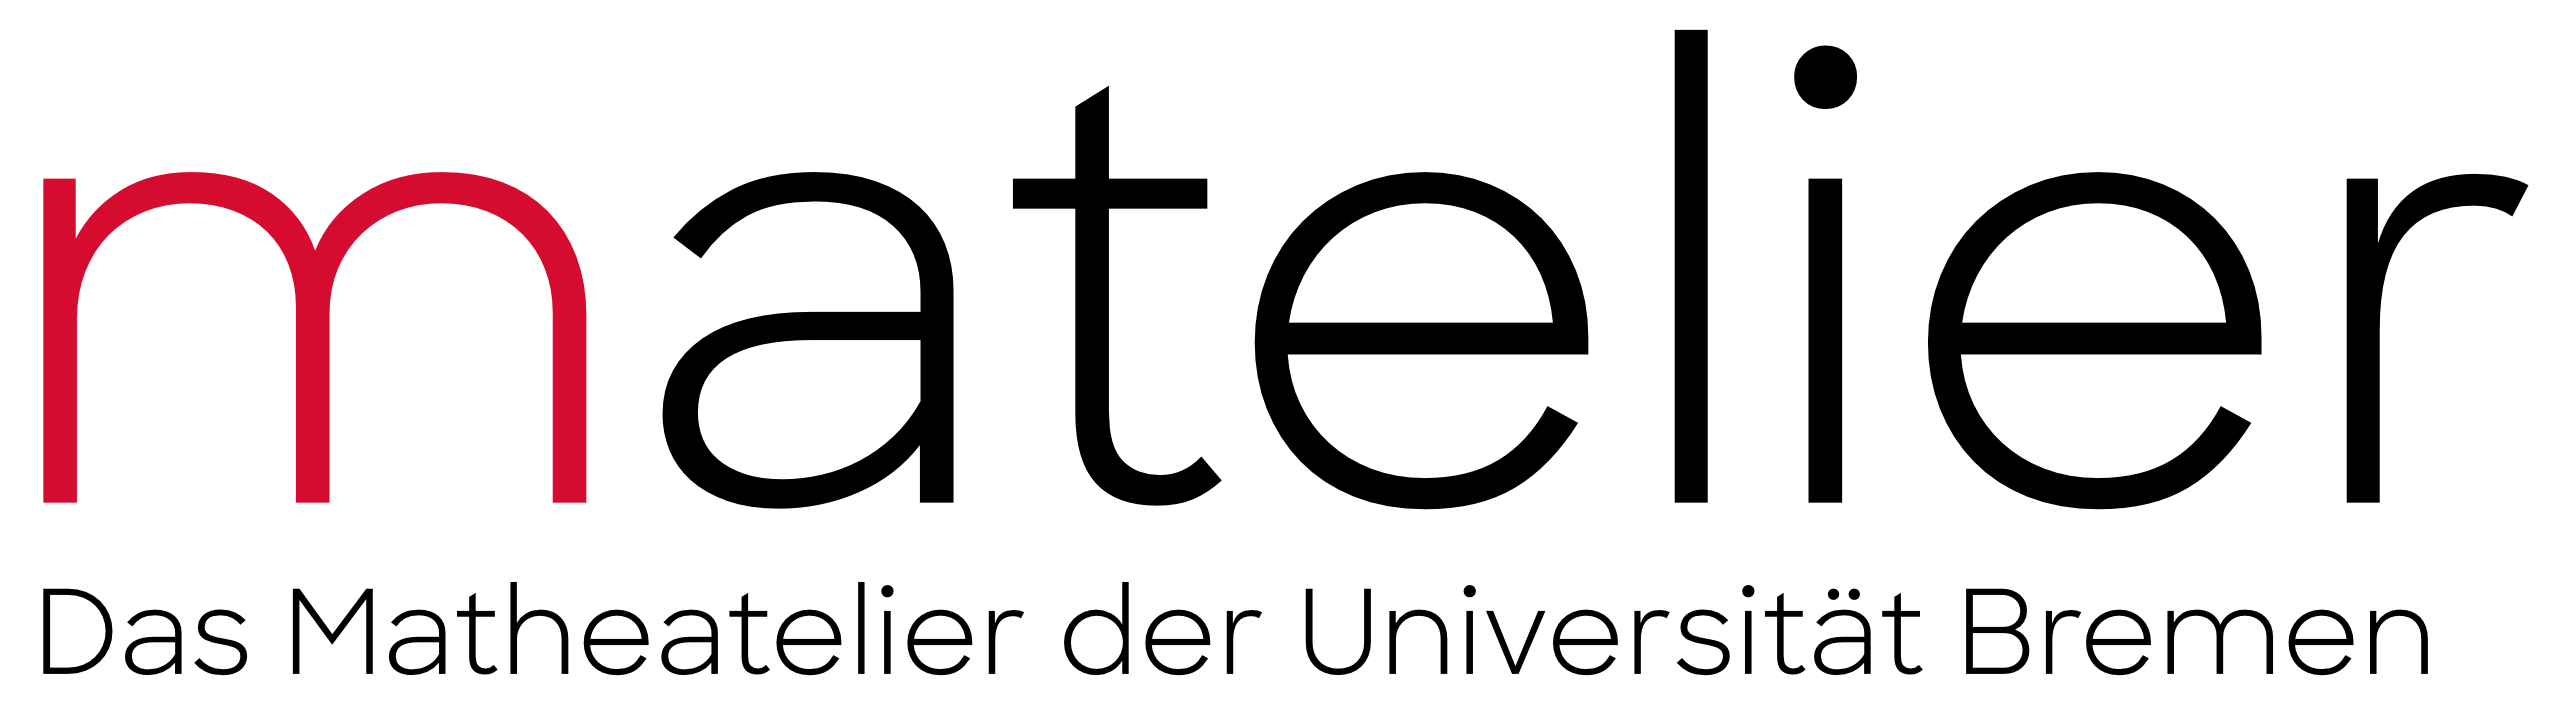 Logo des Matelier: Schriftzug "matelier", darunter kleiner "Das Matheatelier an der Universit?t Bremen"